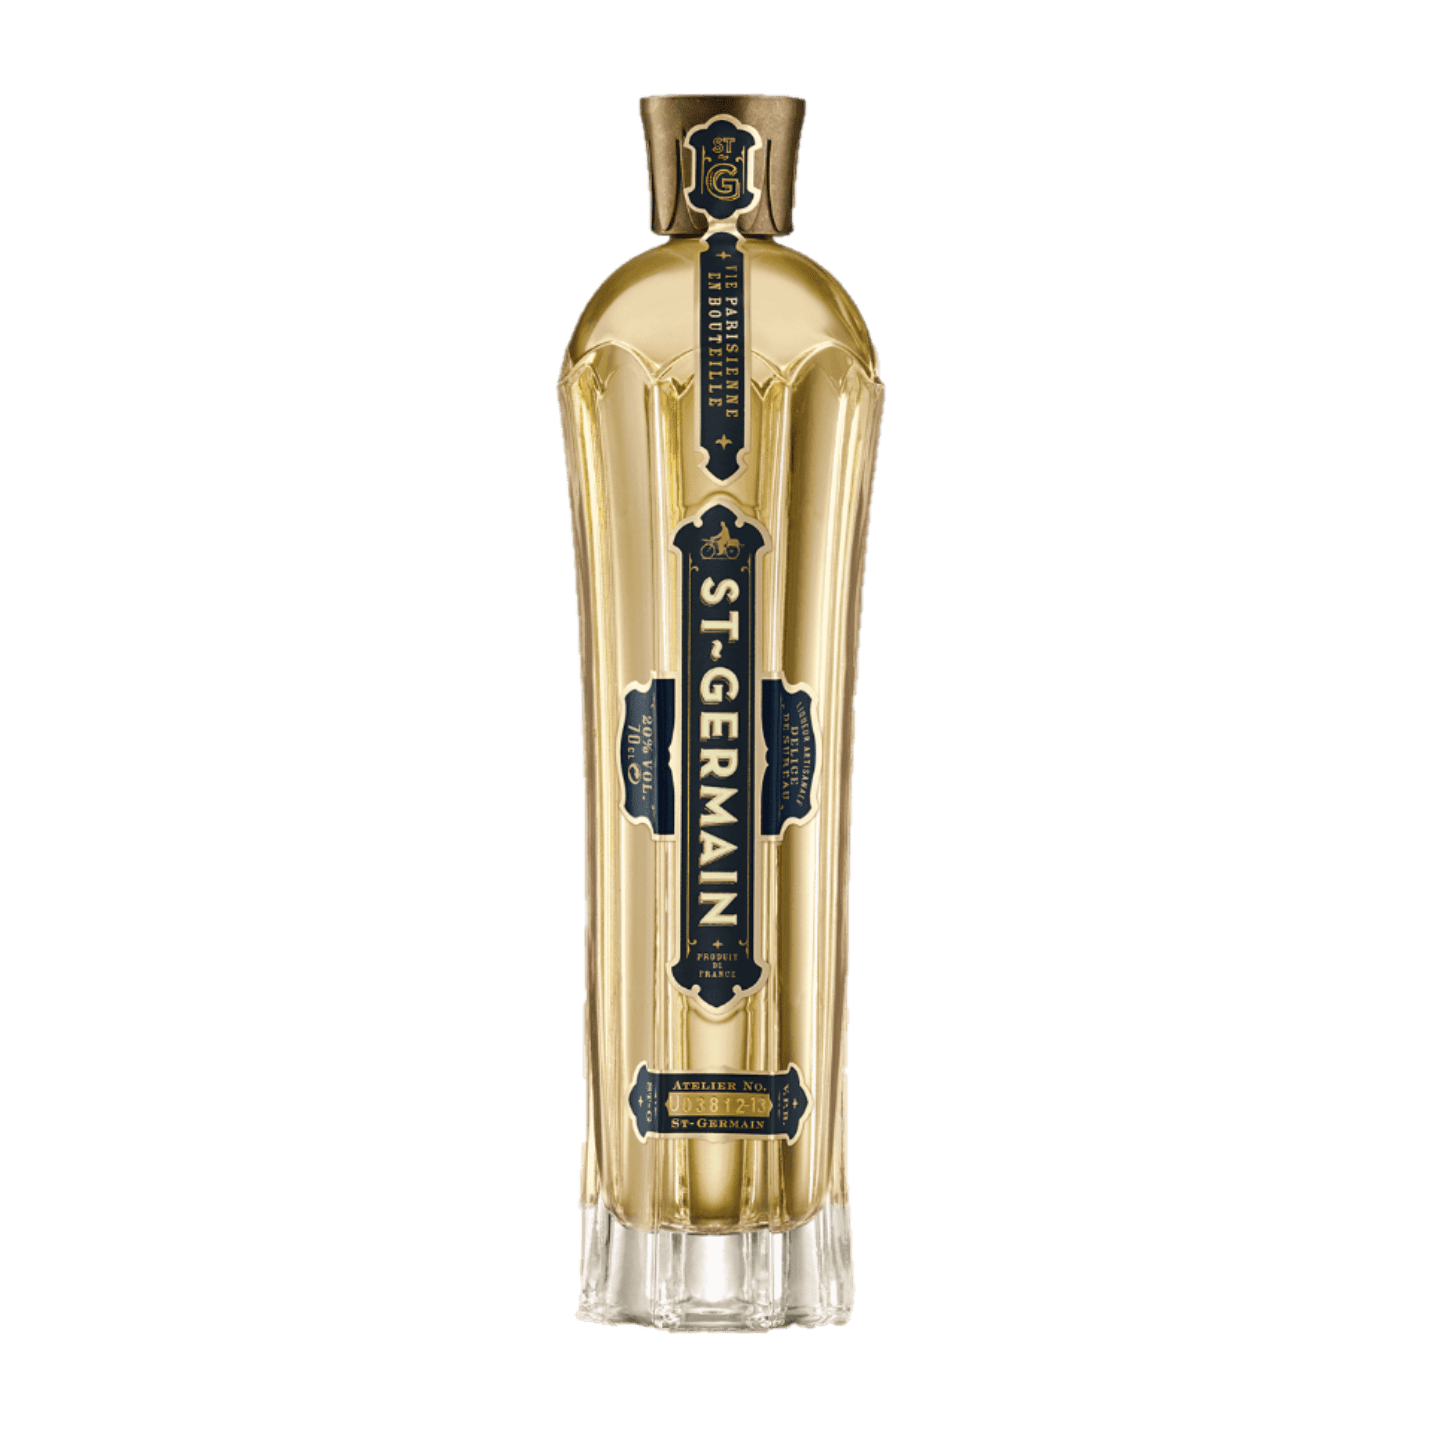 St. Germain Elderflower Liqueur